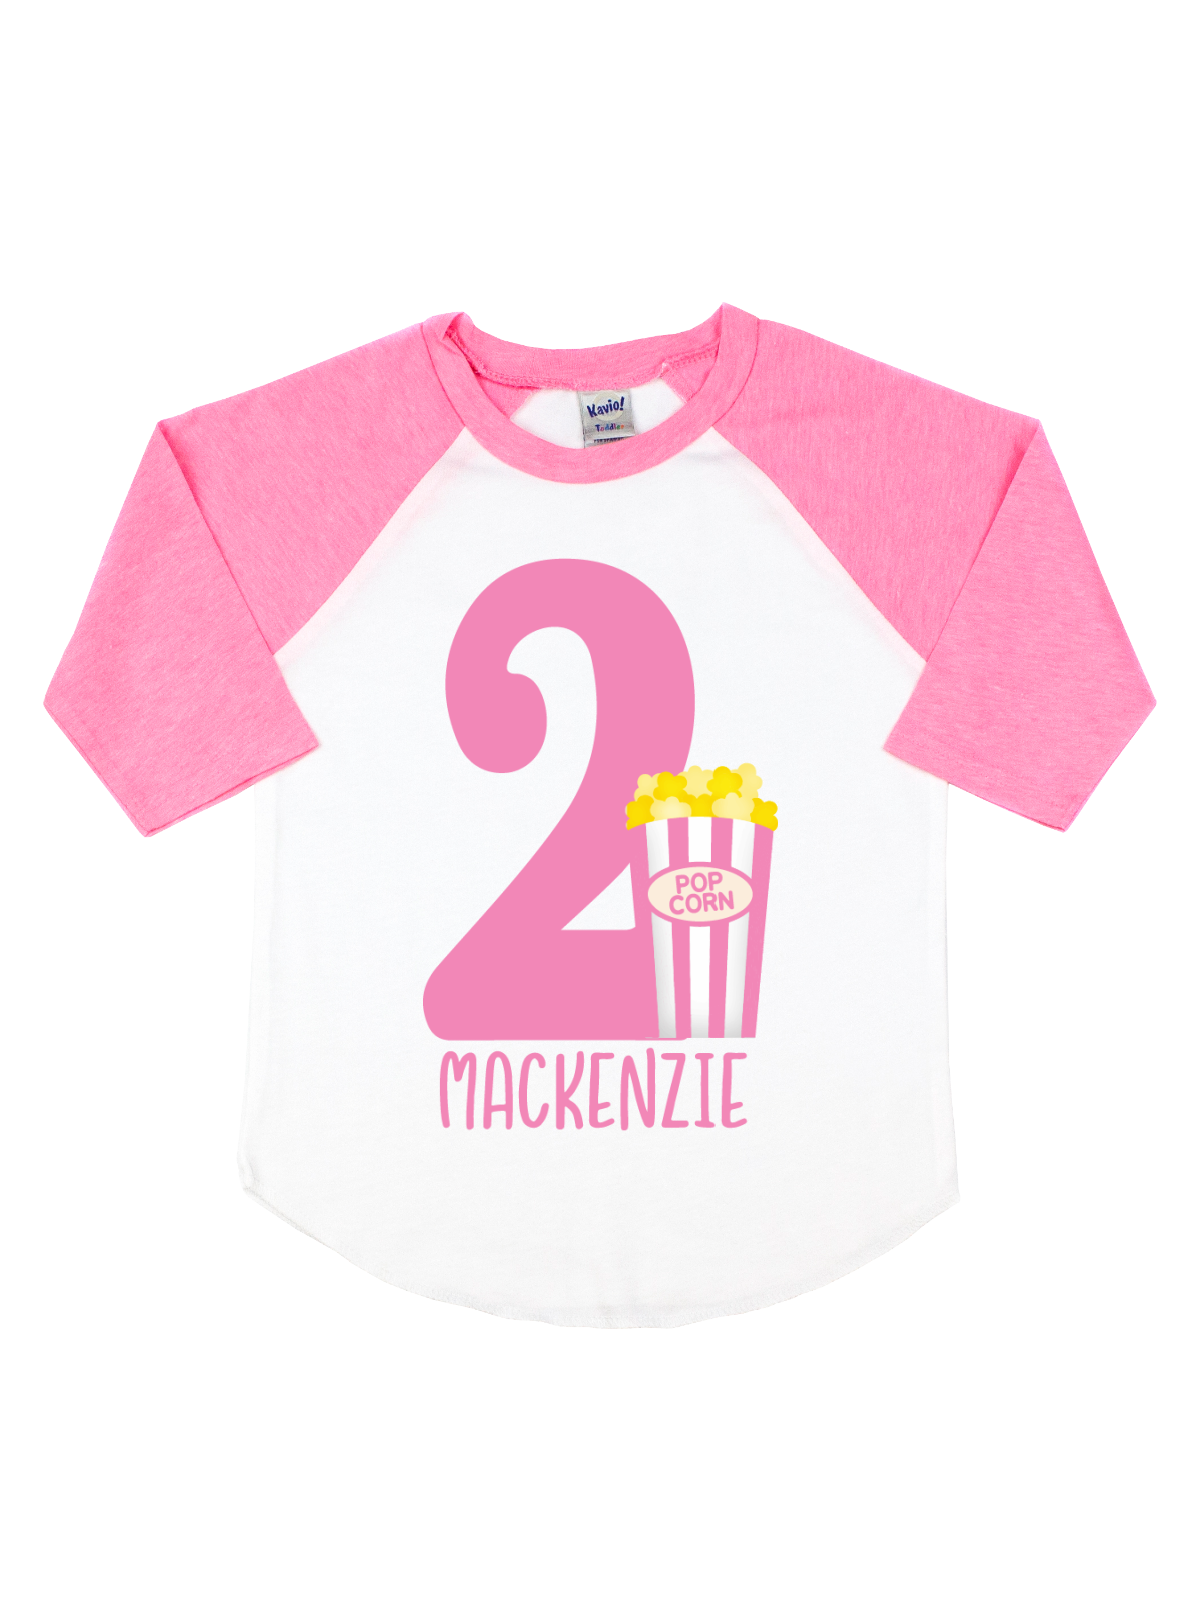 pink and white popcorn birthday shirt